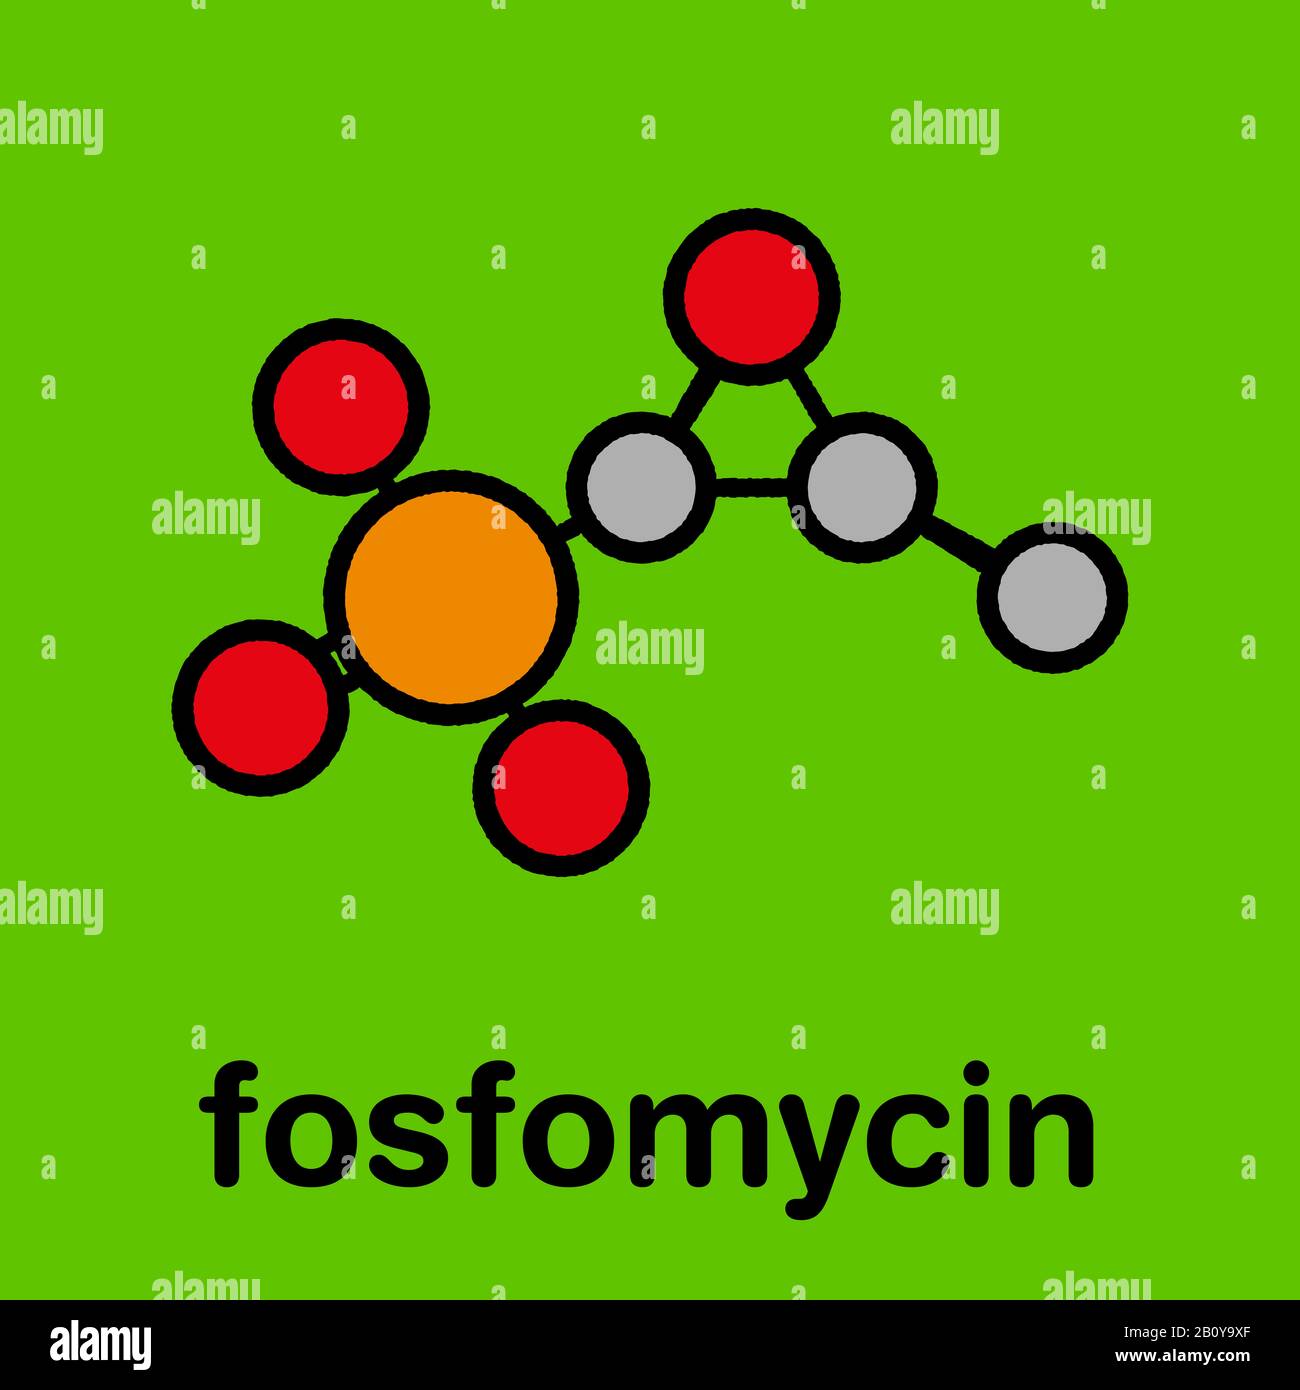 Fosfomycin. Molekülmodell Ausgedehntspektrum Antibiotika Fosfomycin (C3.  H7. O4. (P), auch bekannt als Phosphomycin. Dieses Medikament wird bei der  Behandlung von Infektionen der Harnwege verwendet. Atome als Kugeln  dargestellt werden und sind farblich